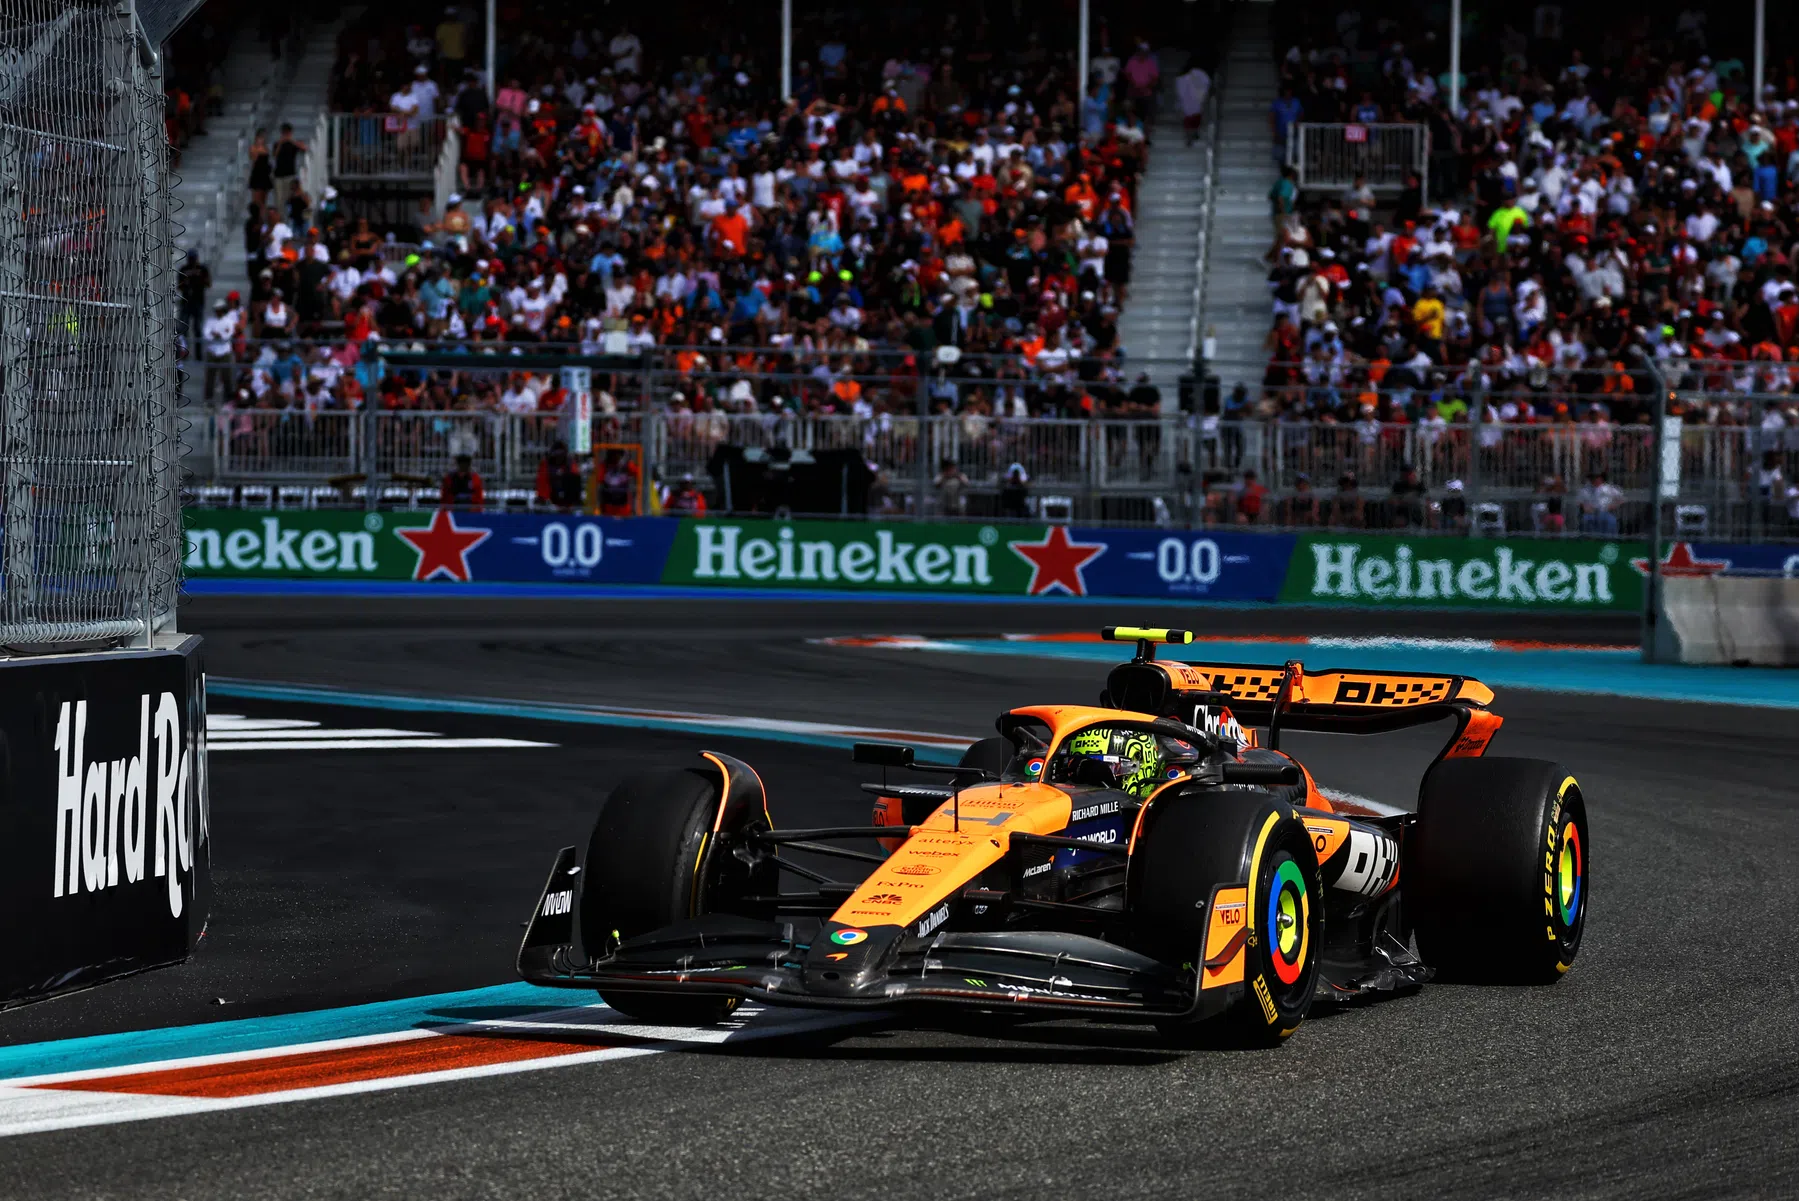 La McLaren non vede l'ora di vedere i suoi aggiornamenti a Imola